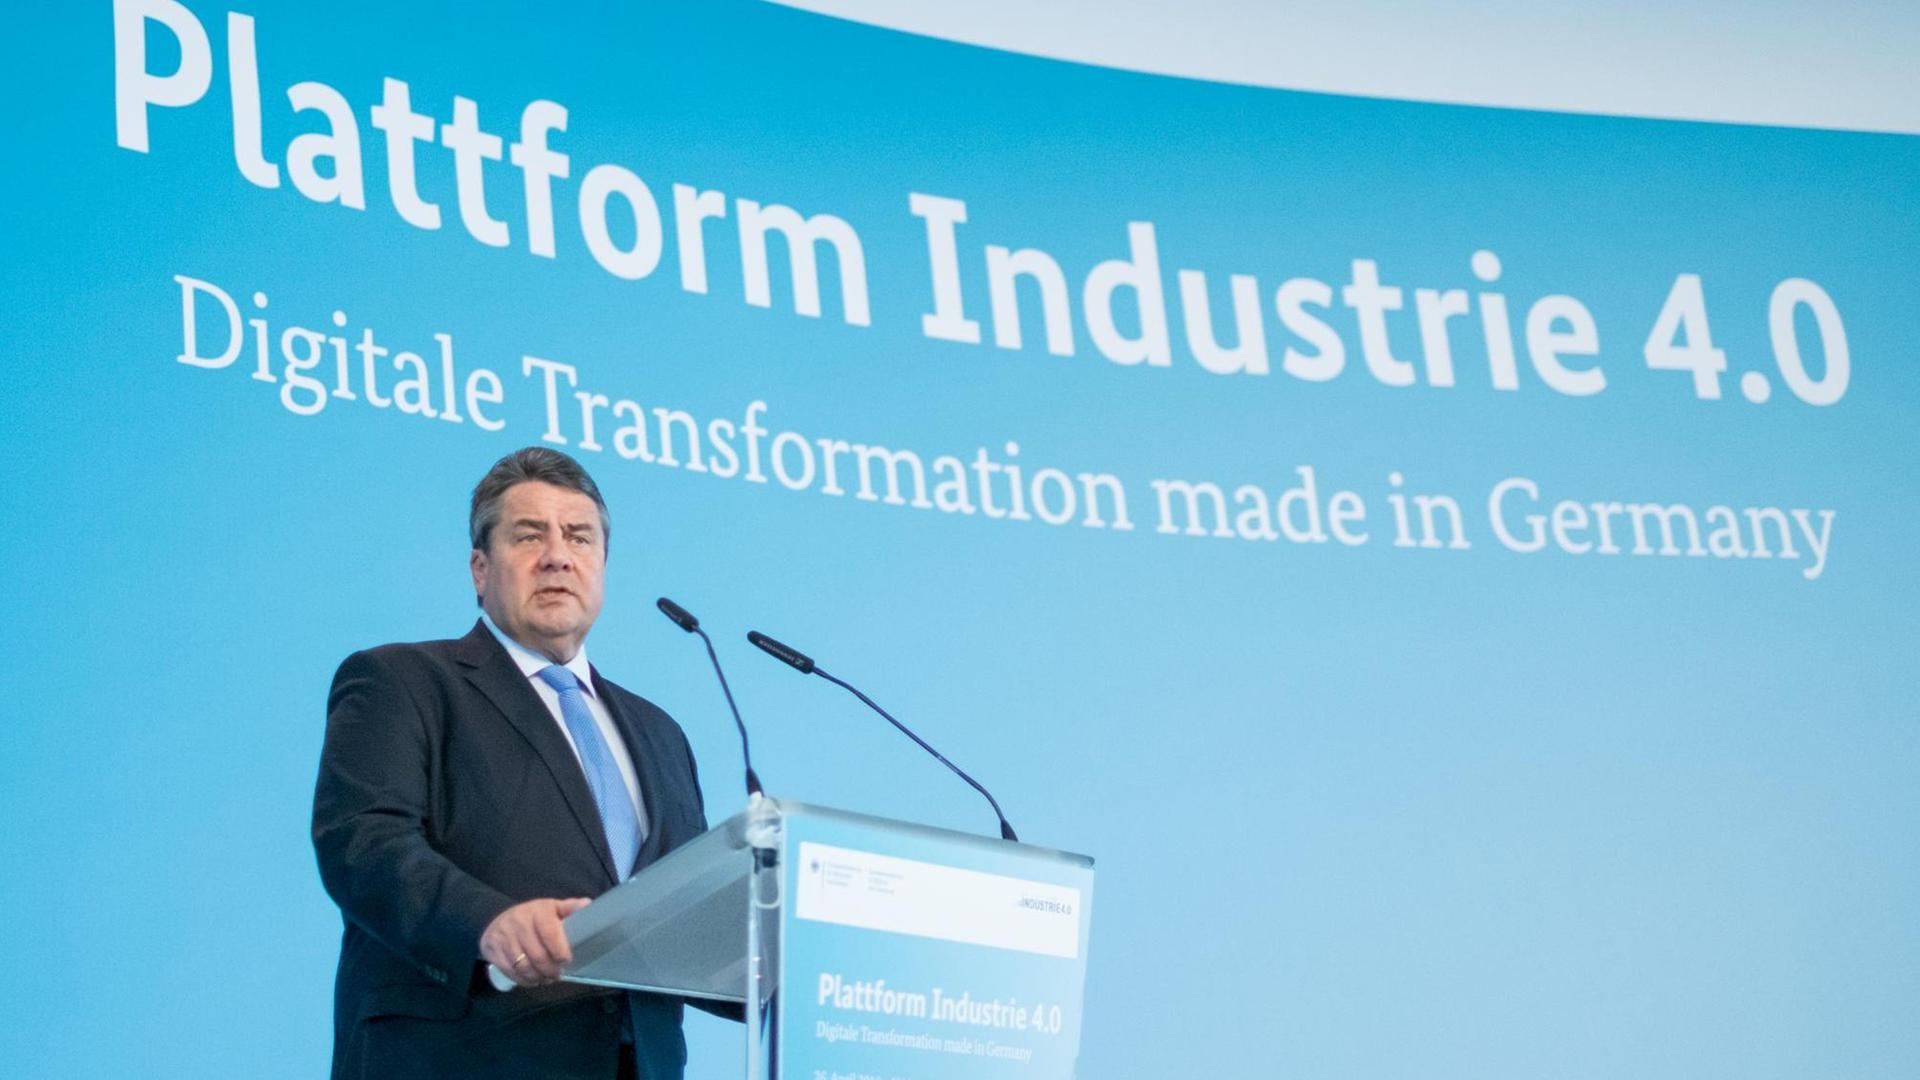 Die Politik soll für Standards sorgen: Bundeswirtschaftsminister Sigmar Gabriel (SPD) spricht am 26.04.2016 bei der Hannover Messe in Hannover (Niedersachsen) zum Thema "Plattform Industrie 4.0".